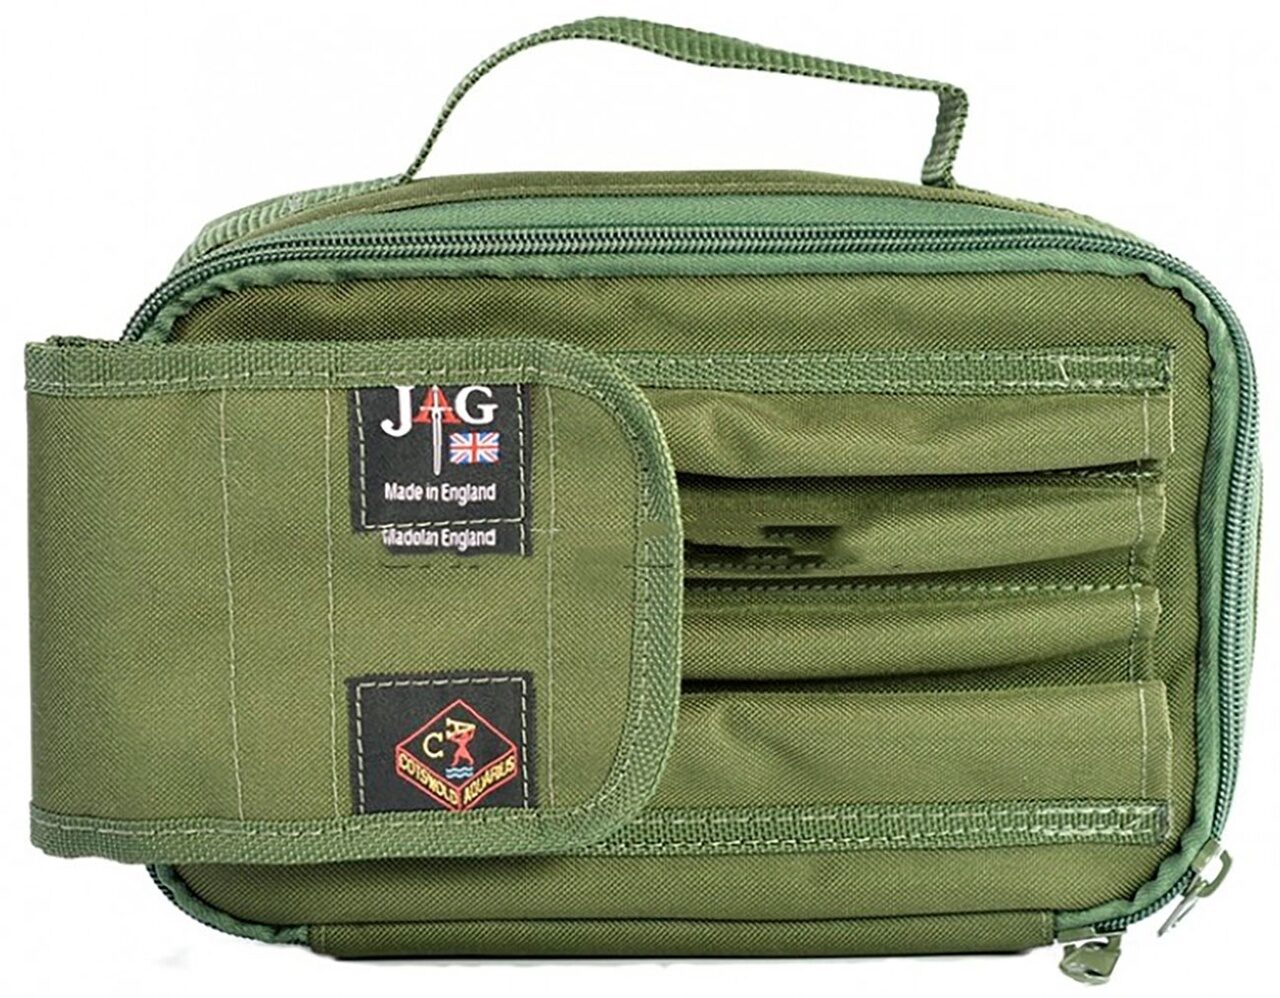 Сумка для перевозки перекладин и стоек на 2 удилища Зелёная 26 см JAG (Джаг) - Buzzbar Bag Green - 2 Rod